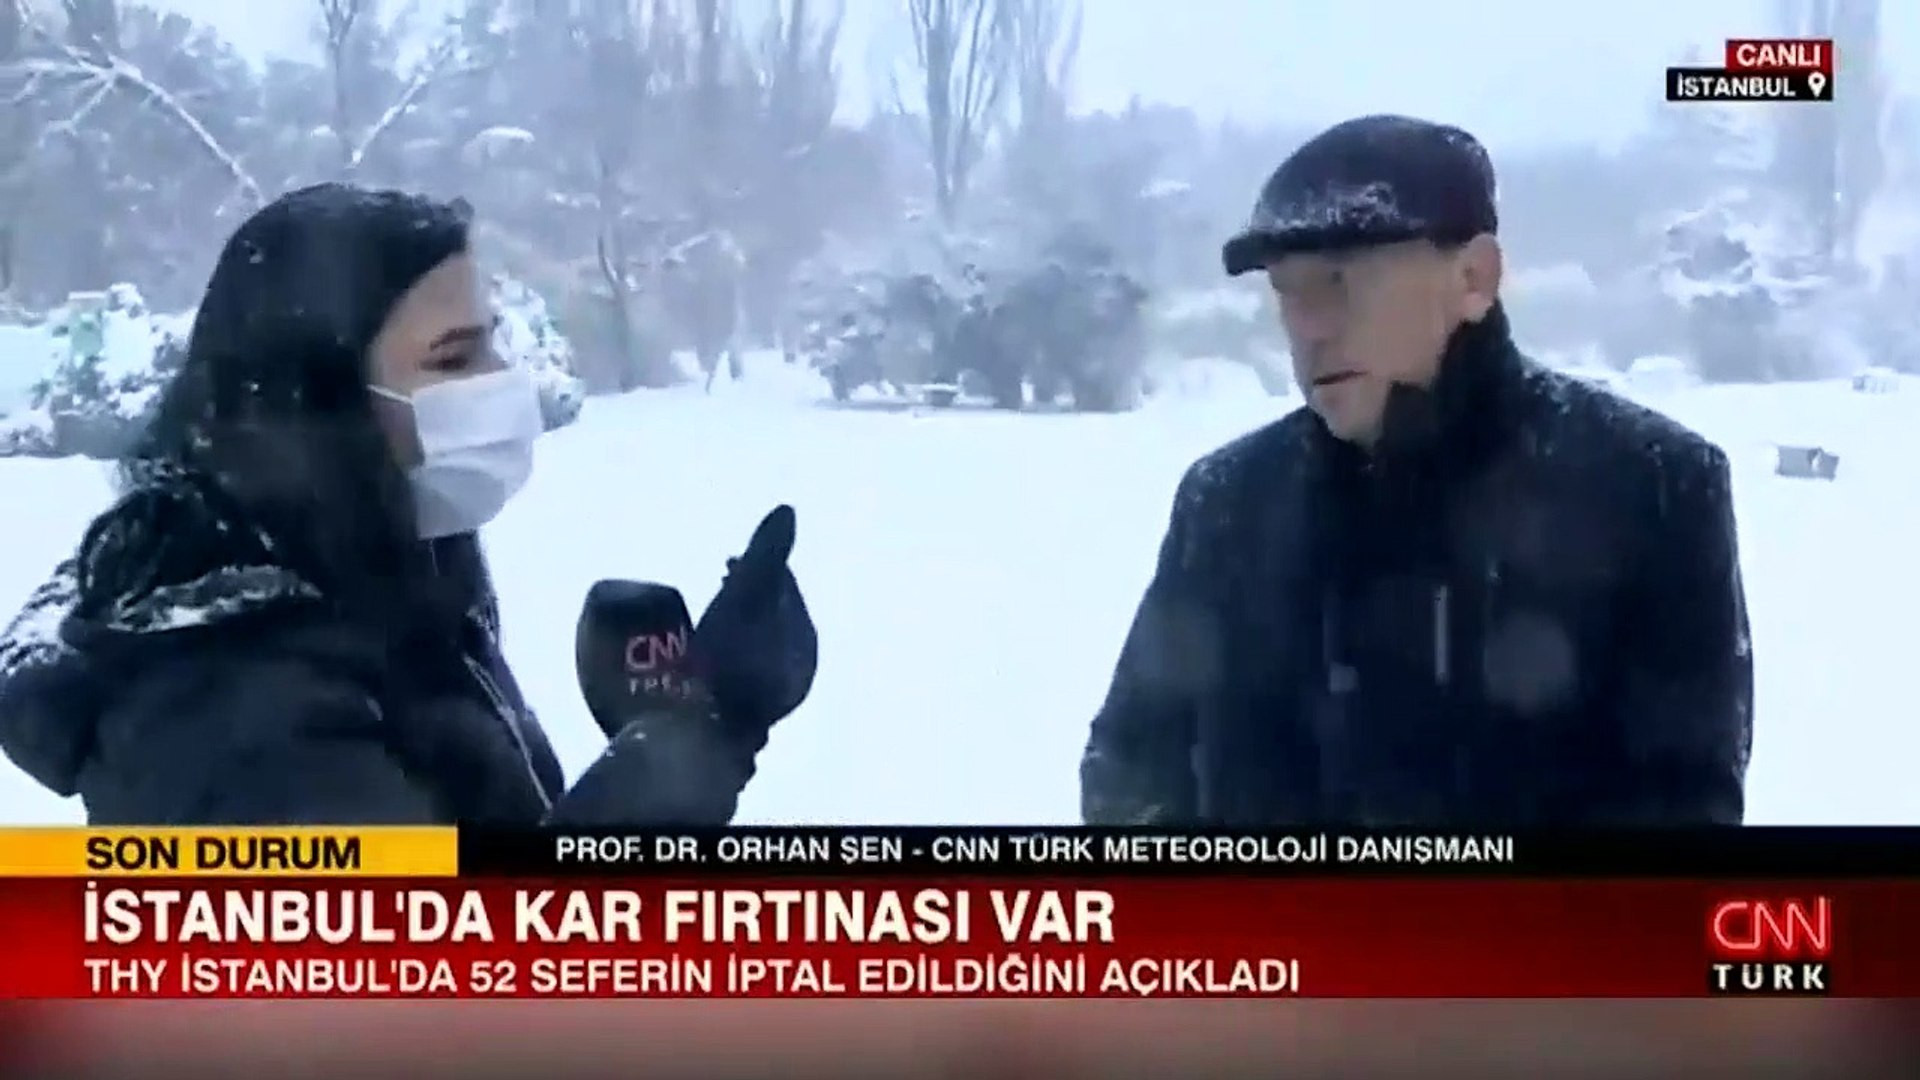 İstanbul'da kar fırtınası: Prof. Dr. Orhan Şen canlı yayında saat verip uyardı